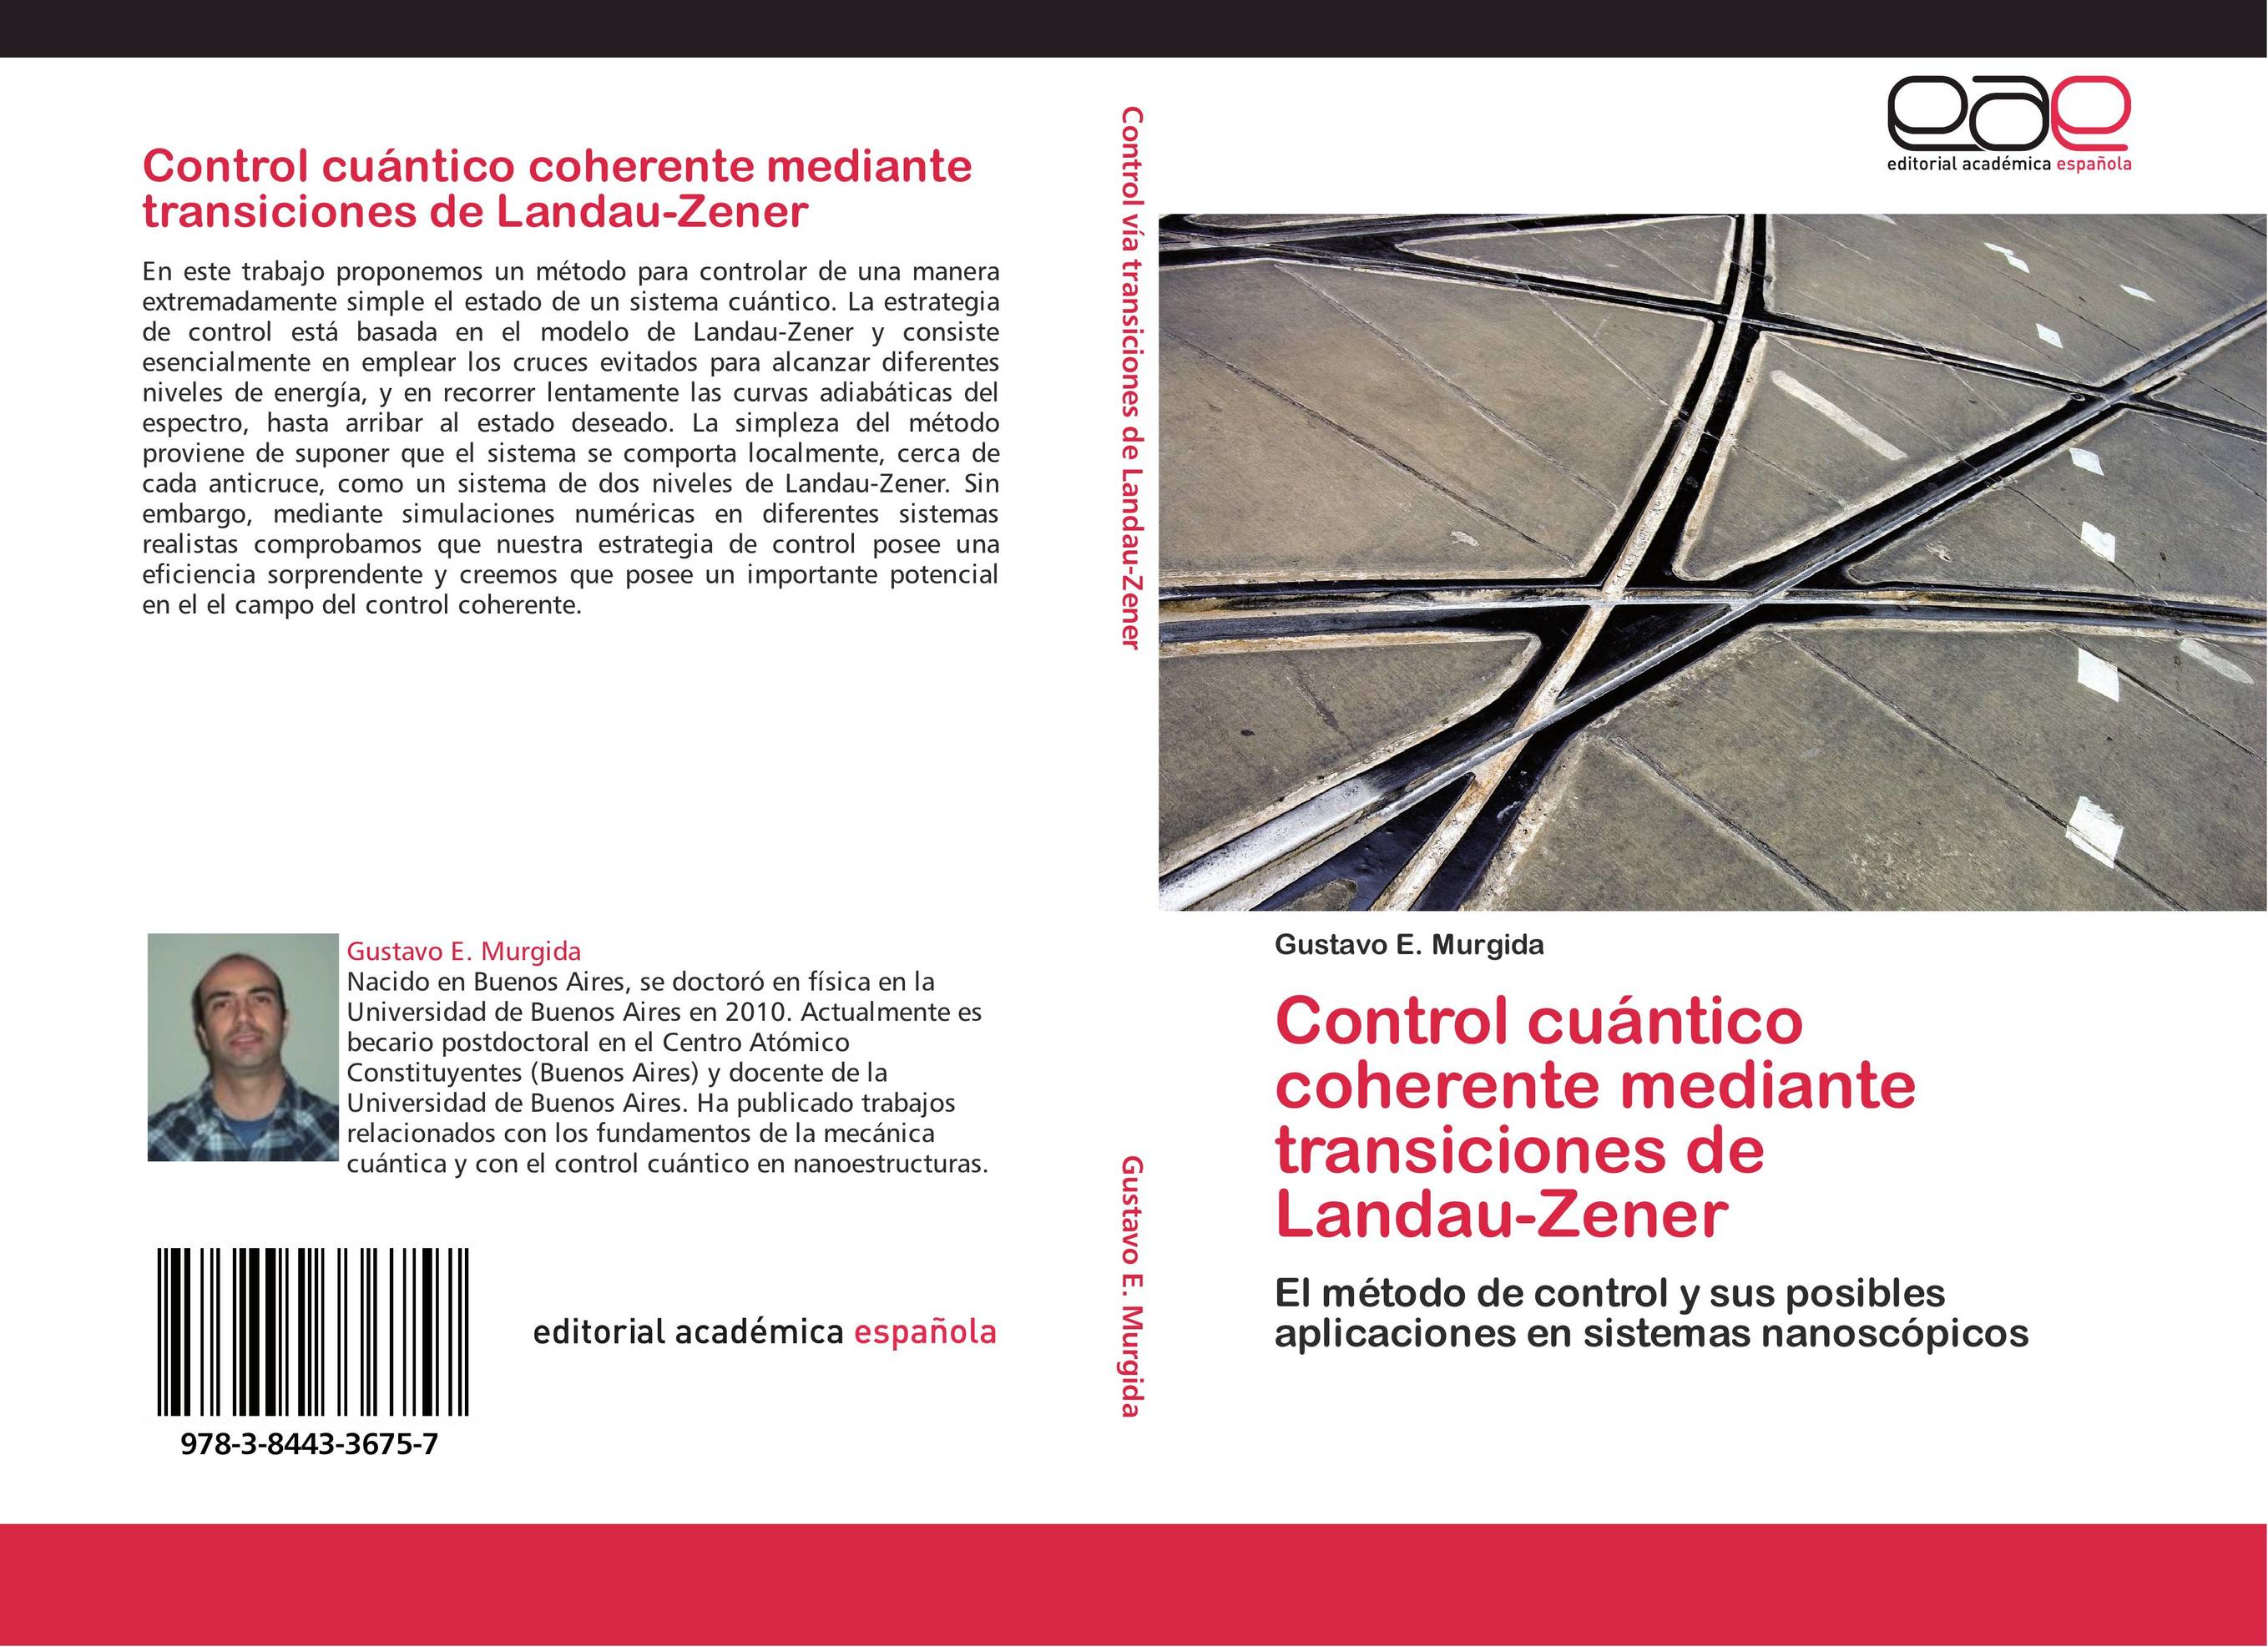 Control cuántico coherente mediante transiciones de  Landau-Zener